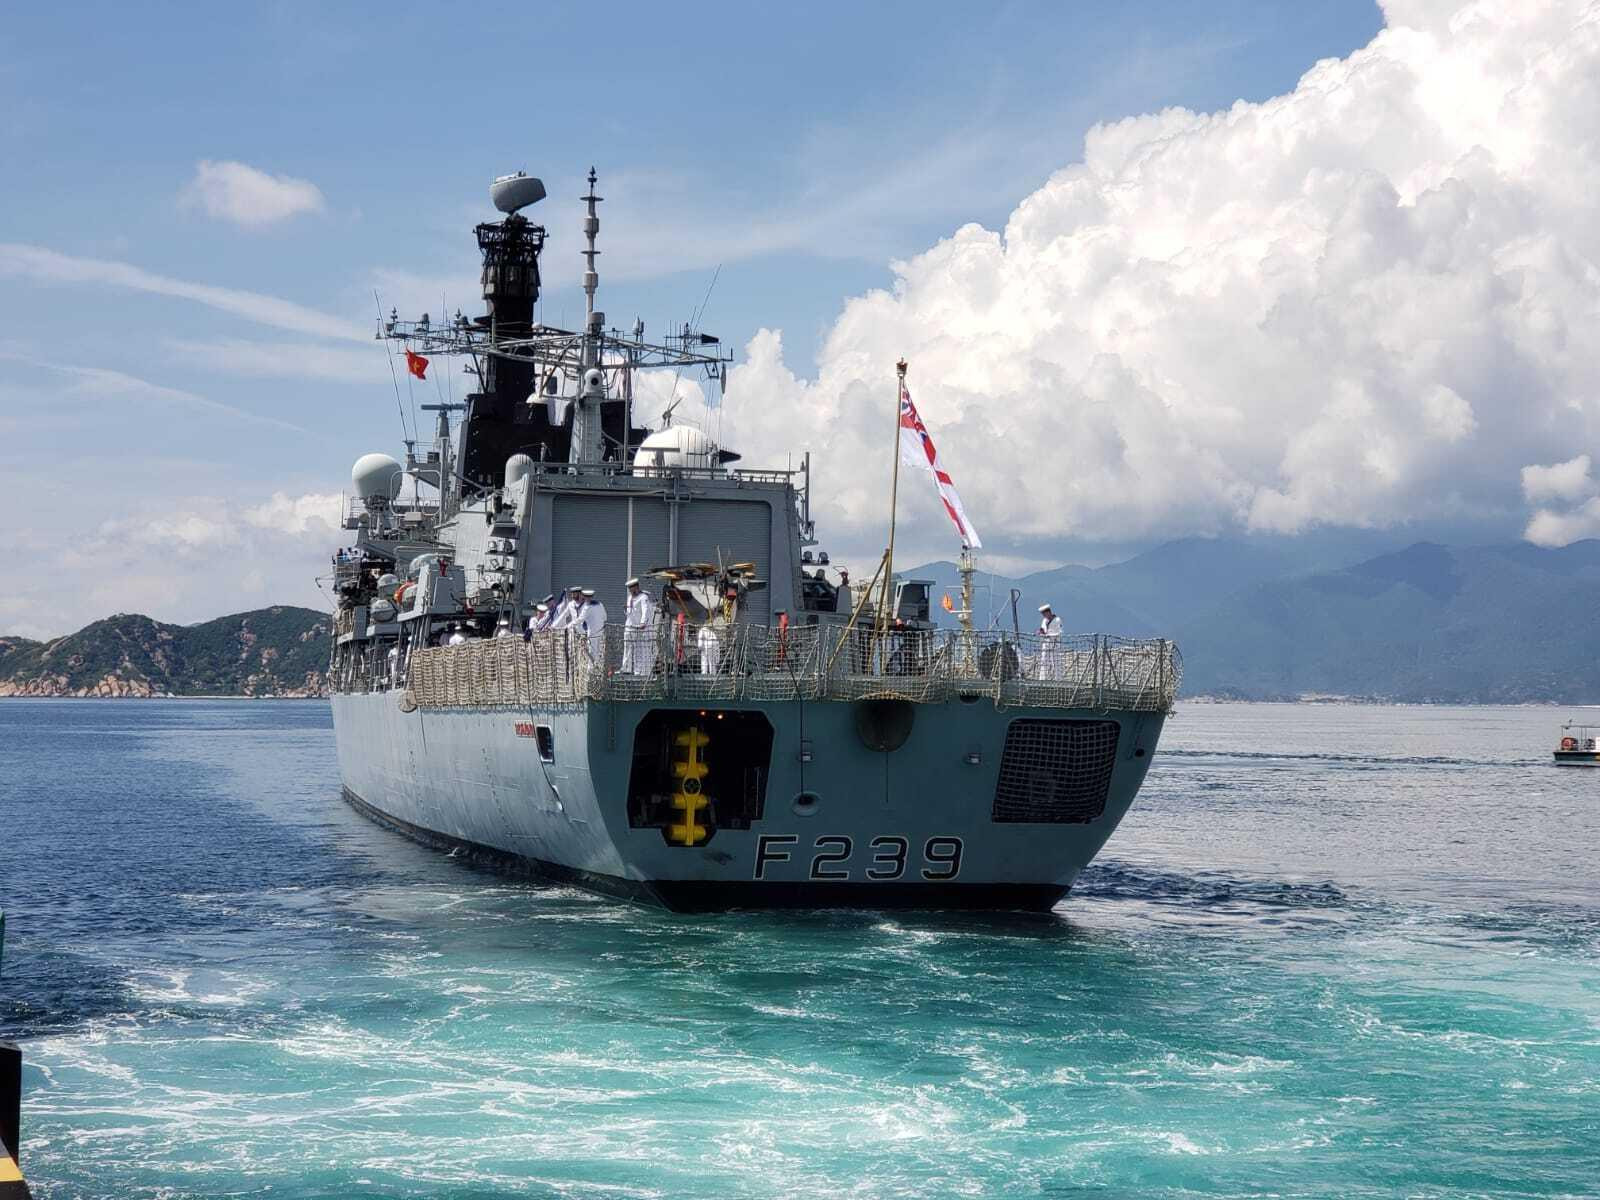 Khinh hạm Anh HMS Richmond cập cảng Cam Ranh, bắt đầu chuyến thăm Việt Nam - 1